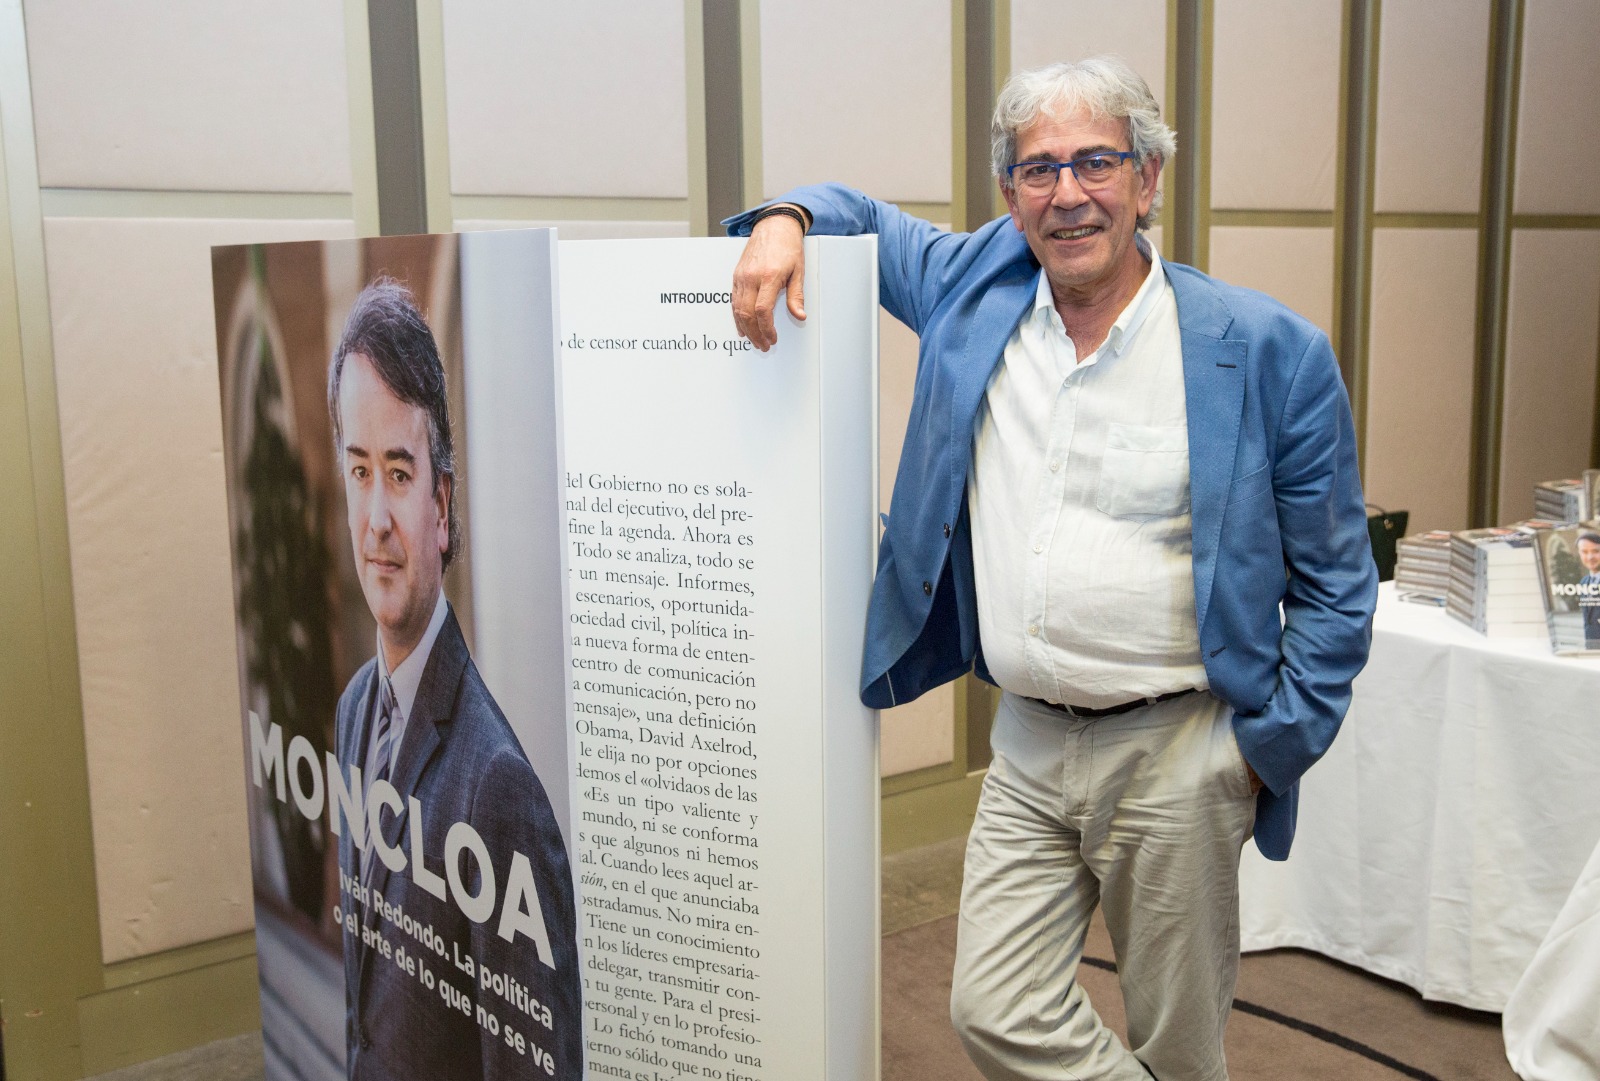 Presentación del libro "Iván Redondo. La política o el arte de lo que no se ve" con el autor Toni Bolaño